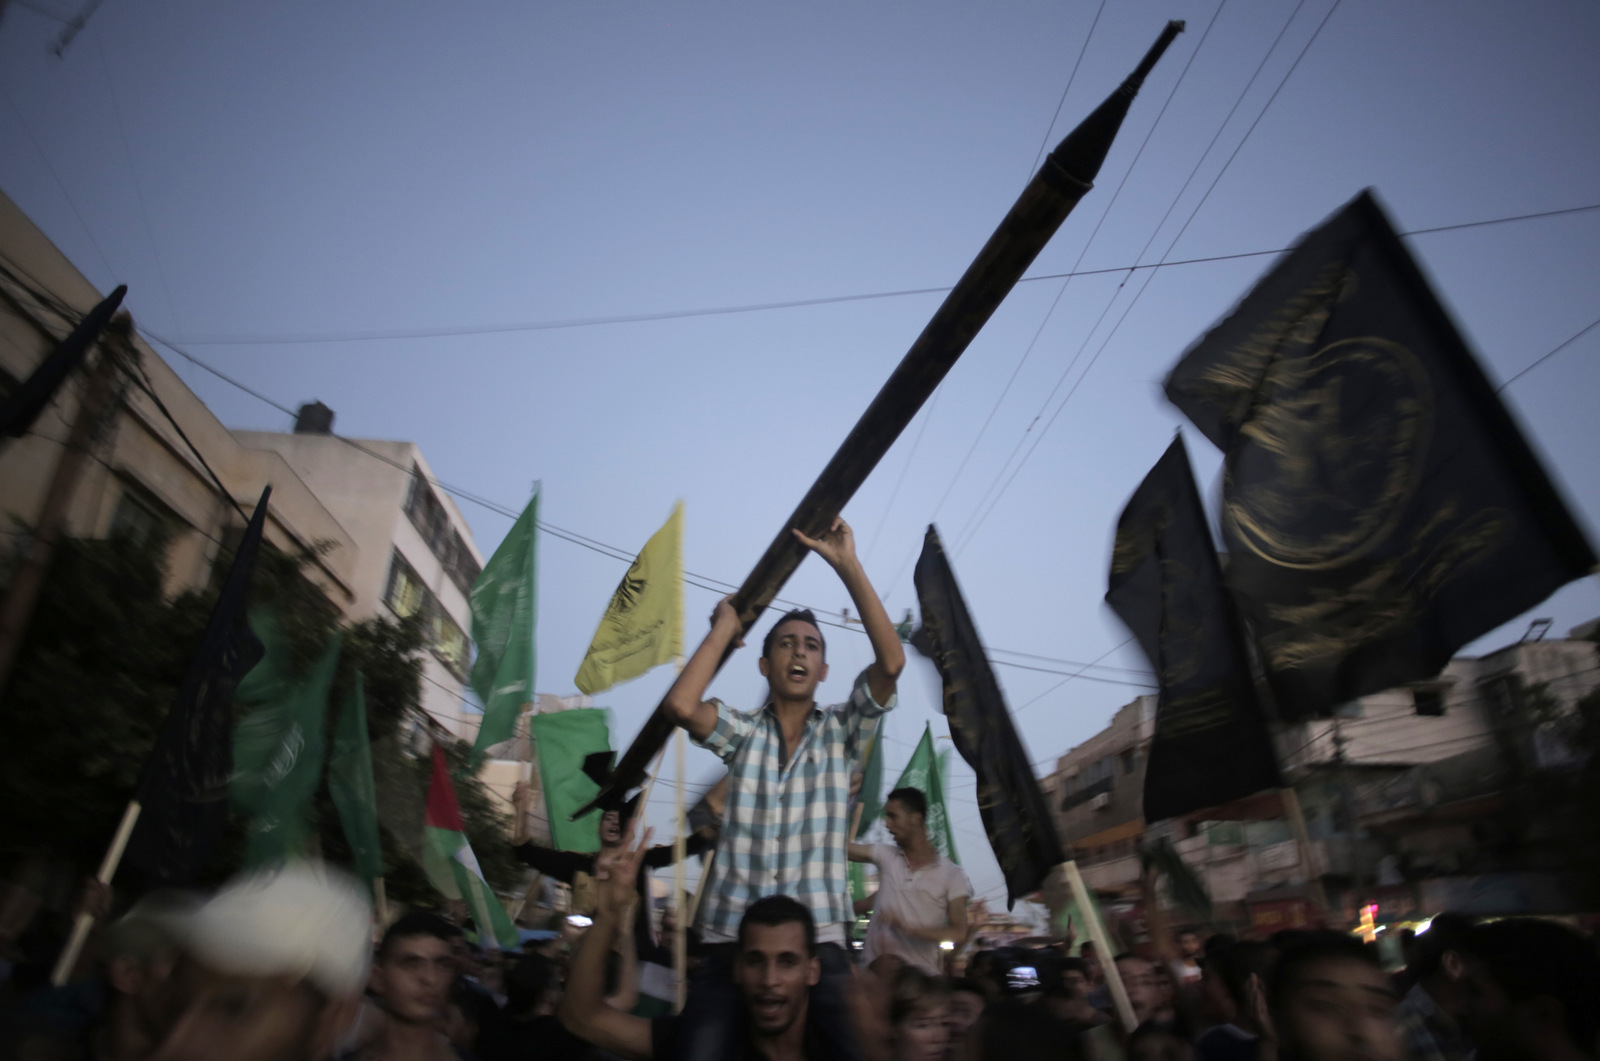 Un hombre sostiene un cohete Qassam simulado mientras los palestinos celebran un alto el fuego de 2014 en la ciudad de Gaza, el 26 de agosto de 2014. Khalil Hamra | AP